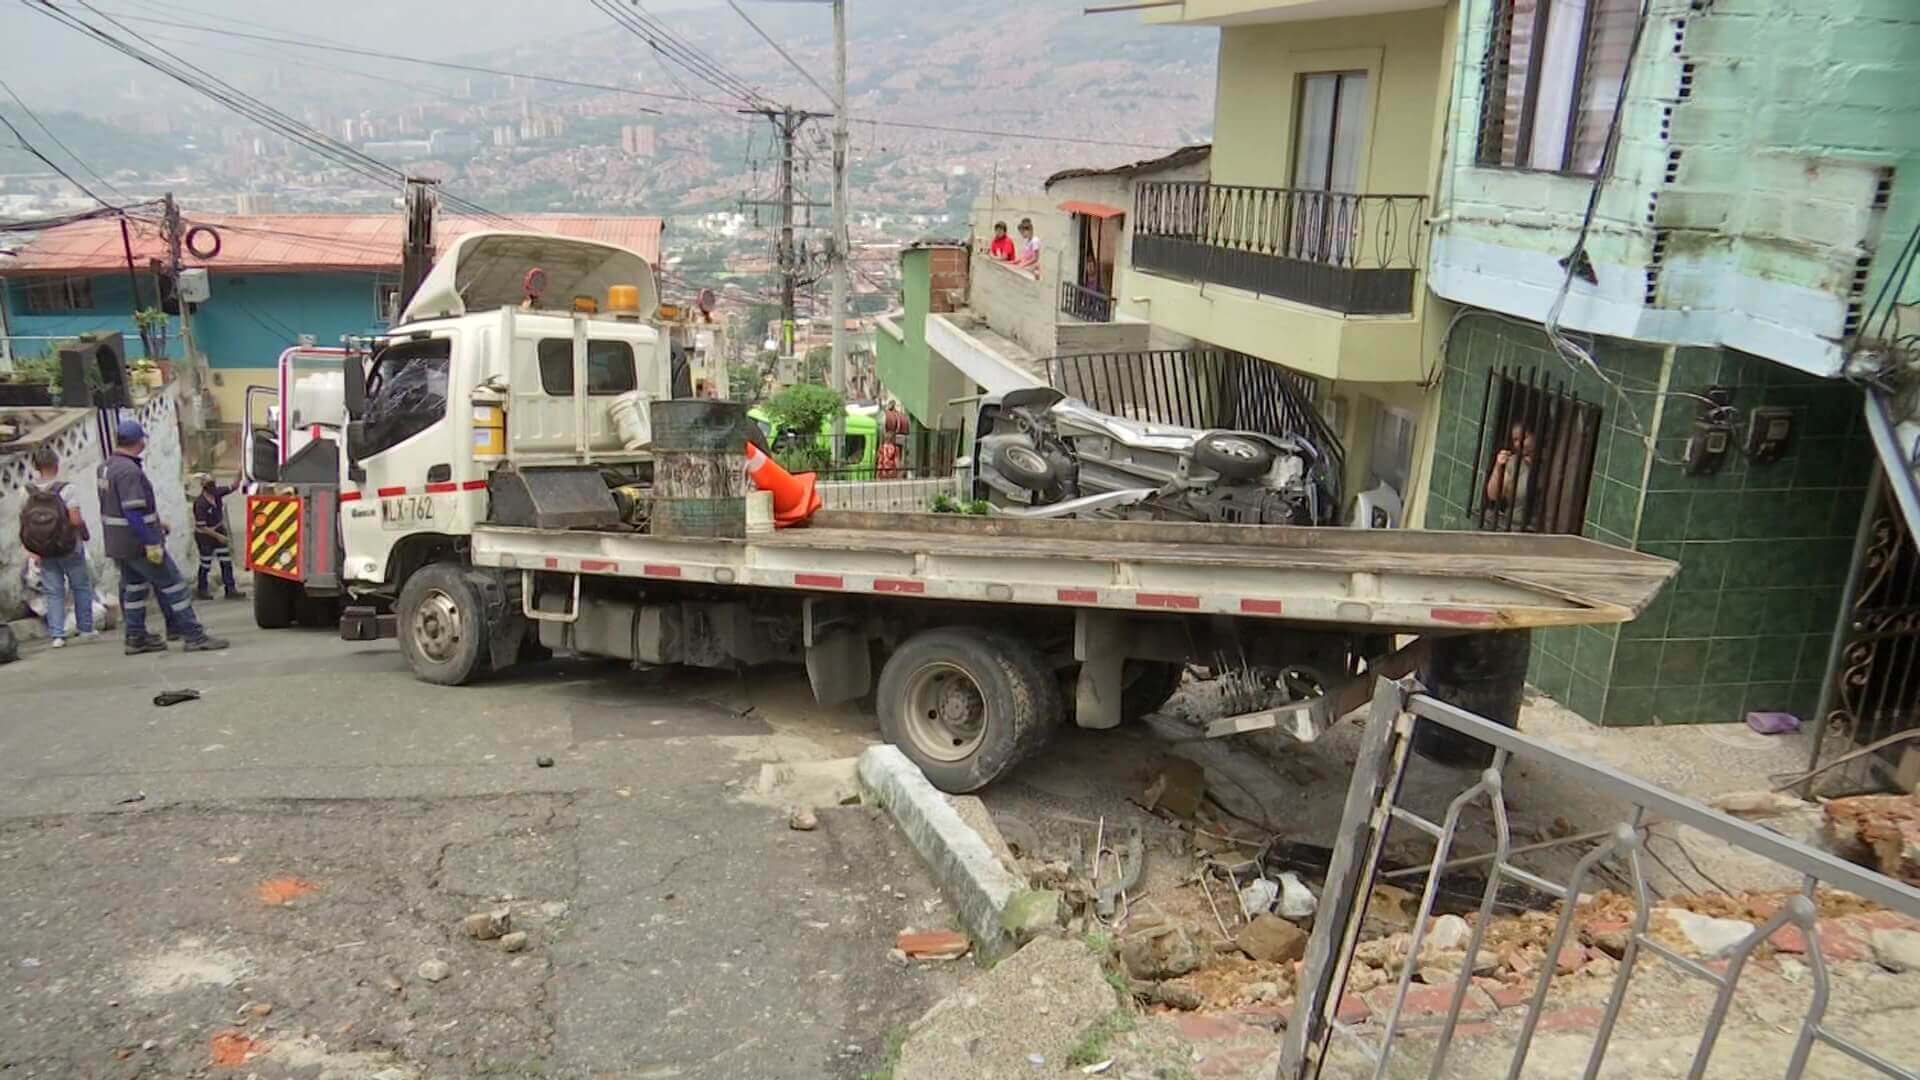 Accidente en Manrique dejó siete viviendas y dos carros afectados